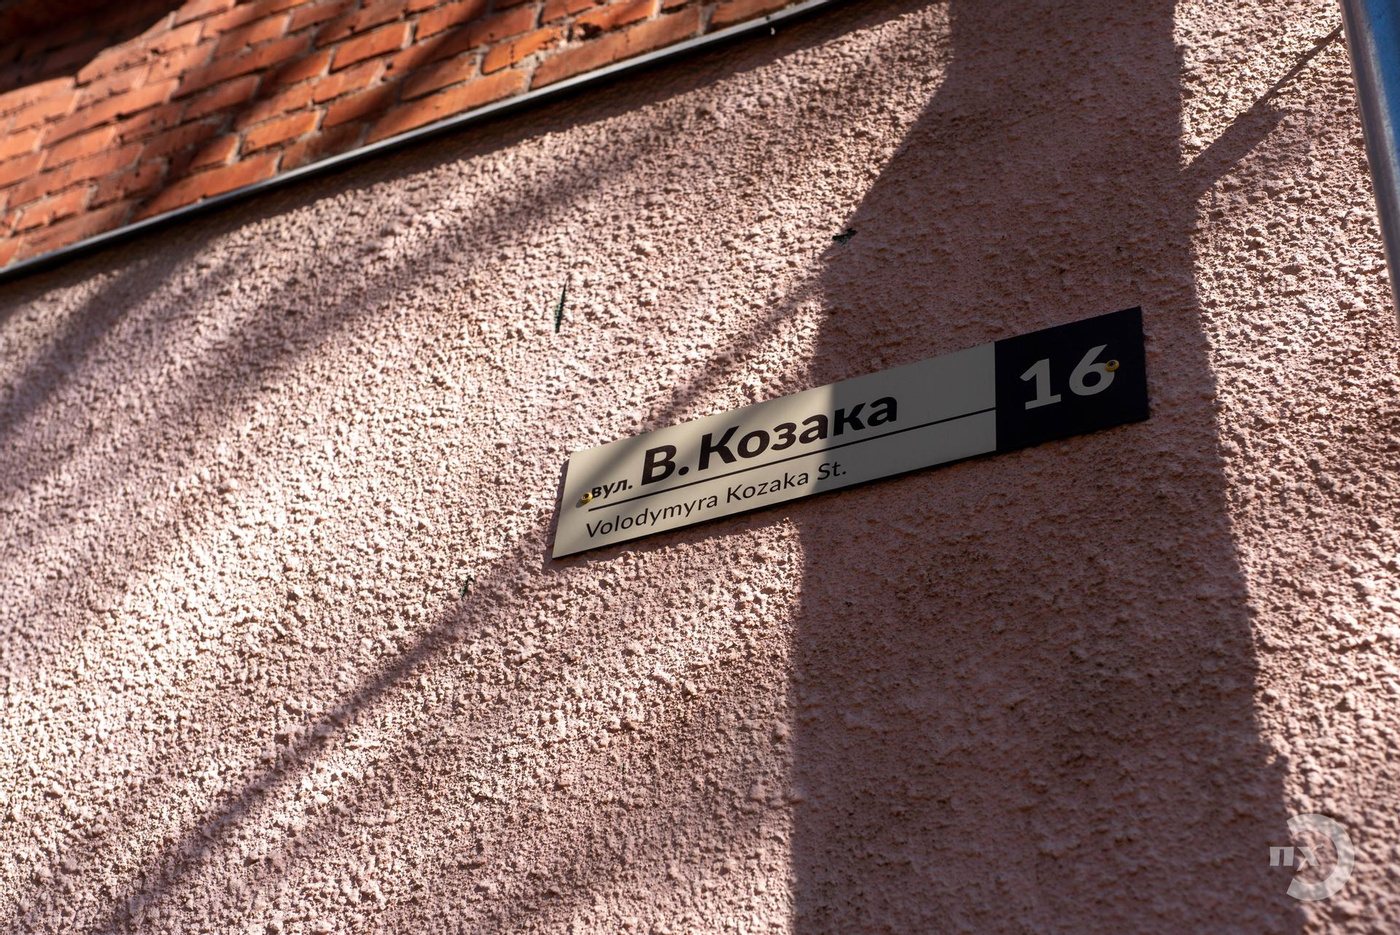 Вулиця Володимира Козака в Полтаві, табличка на будівлі